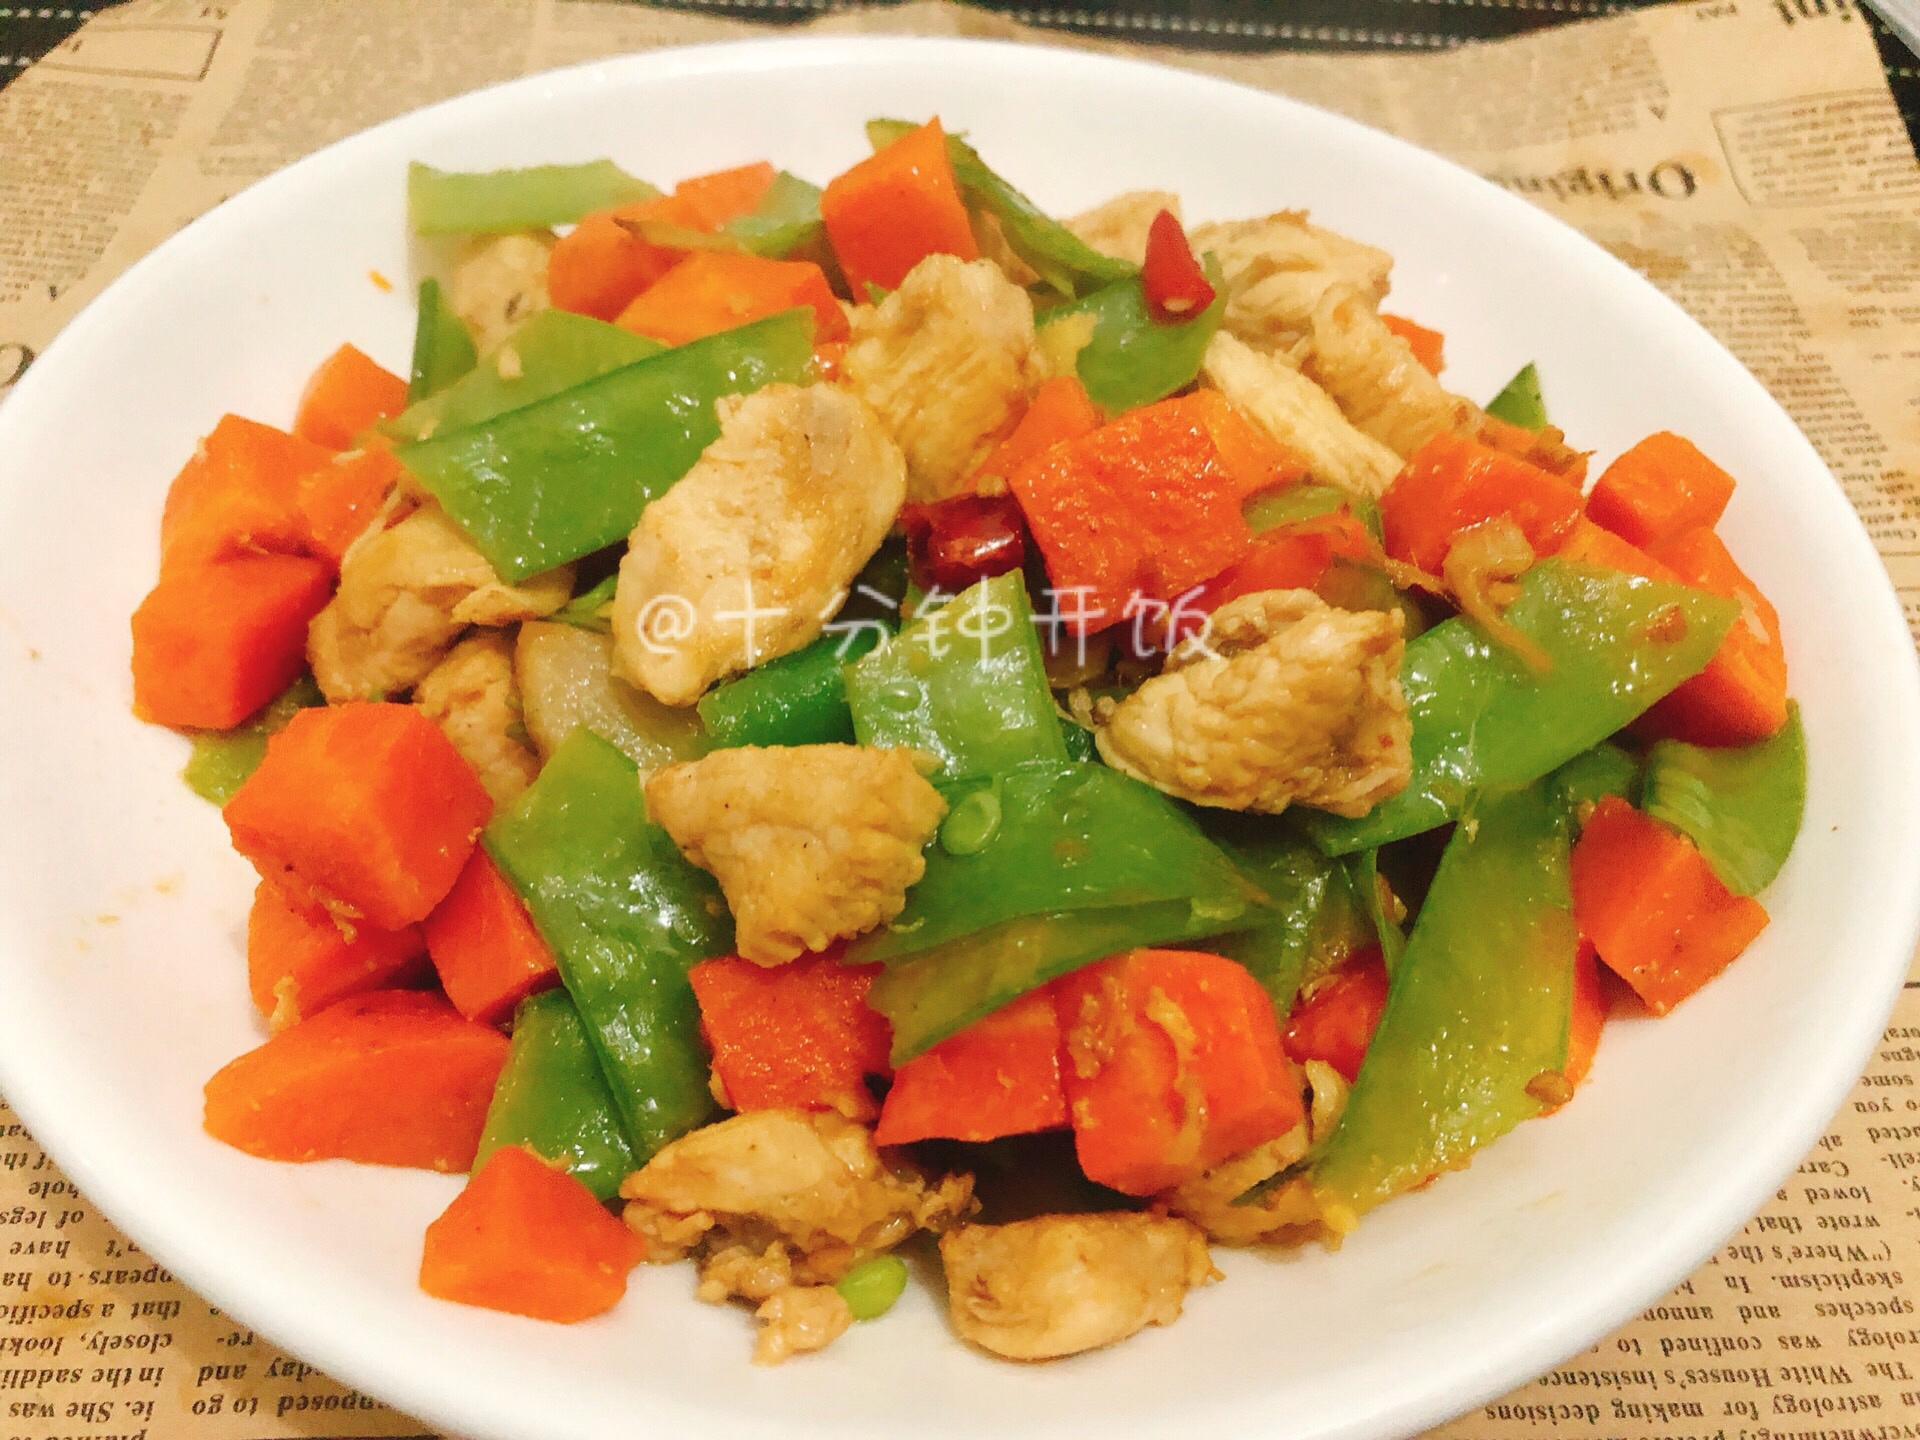 减肥最佳菜谱——鸡胸肉炒胡萝卜，简单易做，有荤有素，低油低脂。的做法